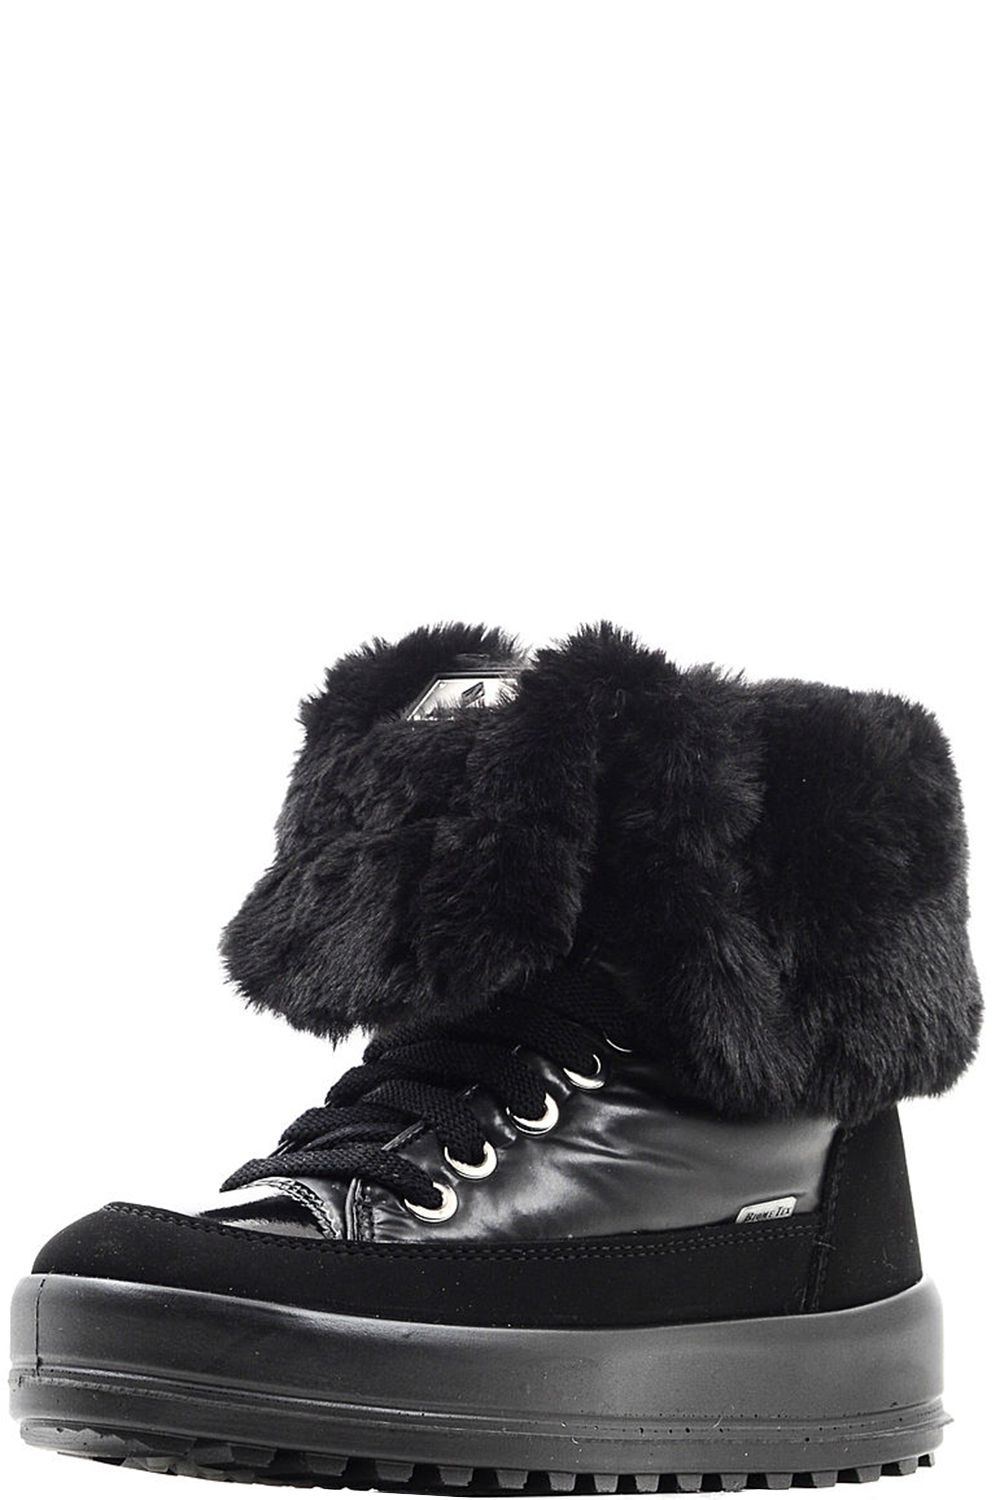 Ботинки JogDog, размер 36, цвет черный